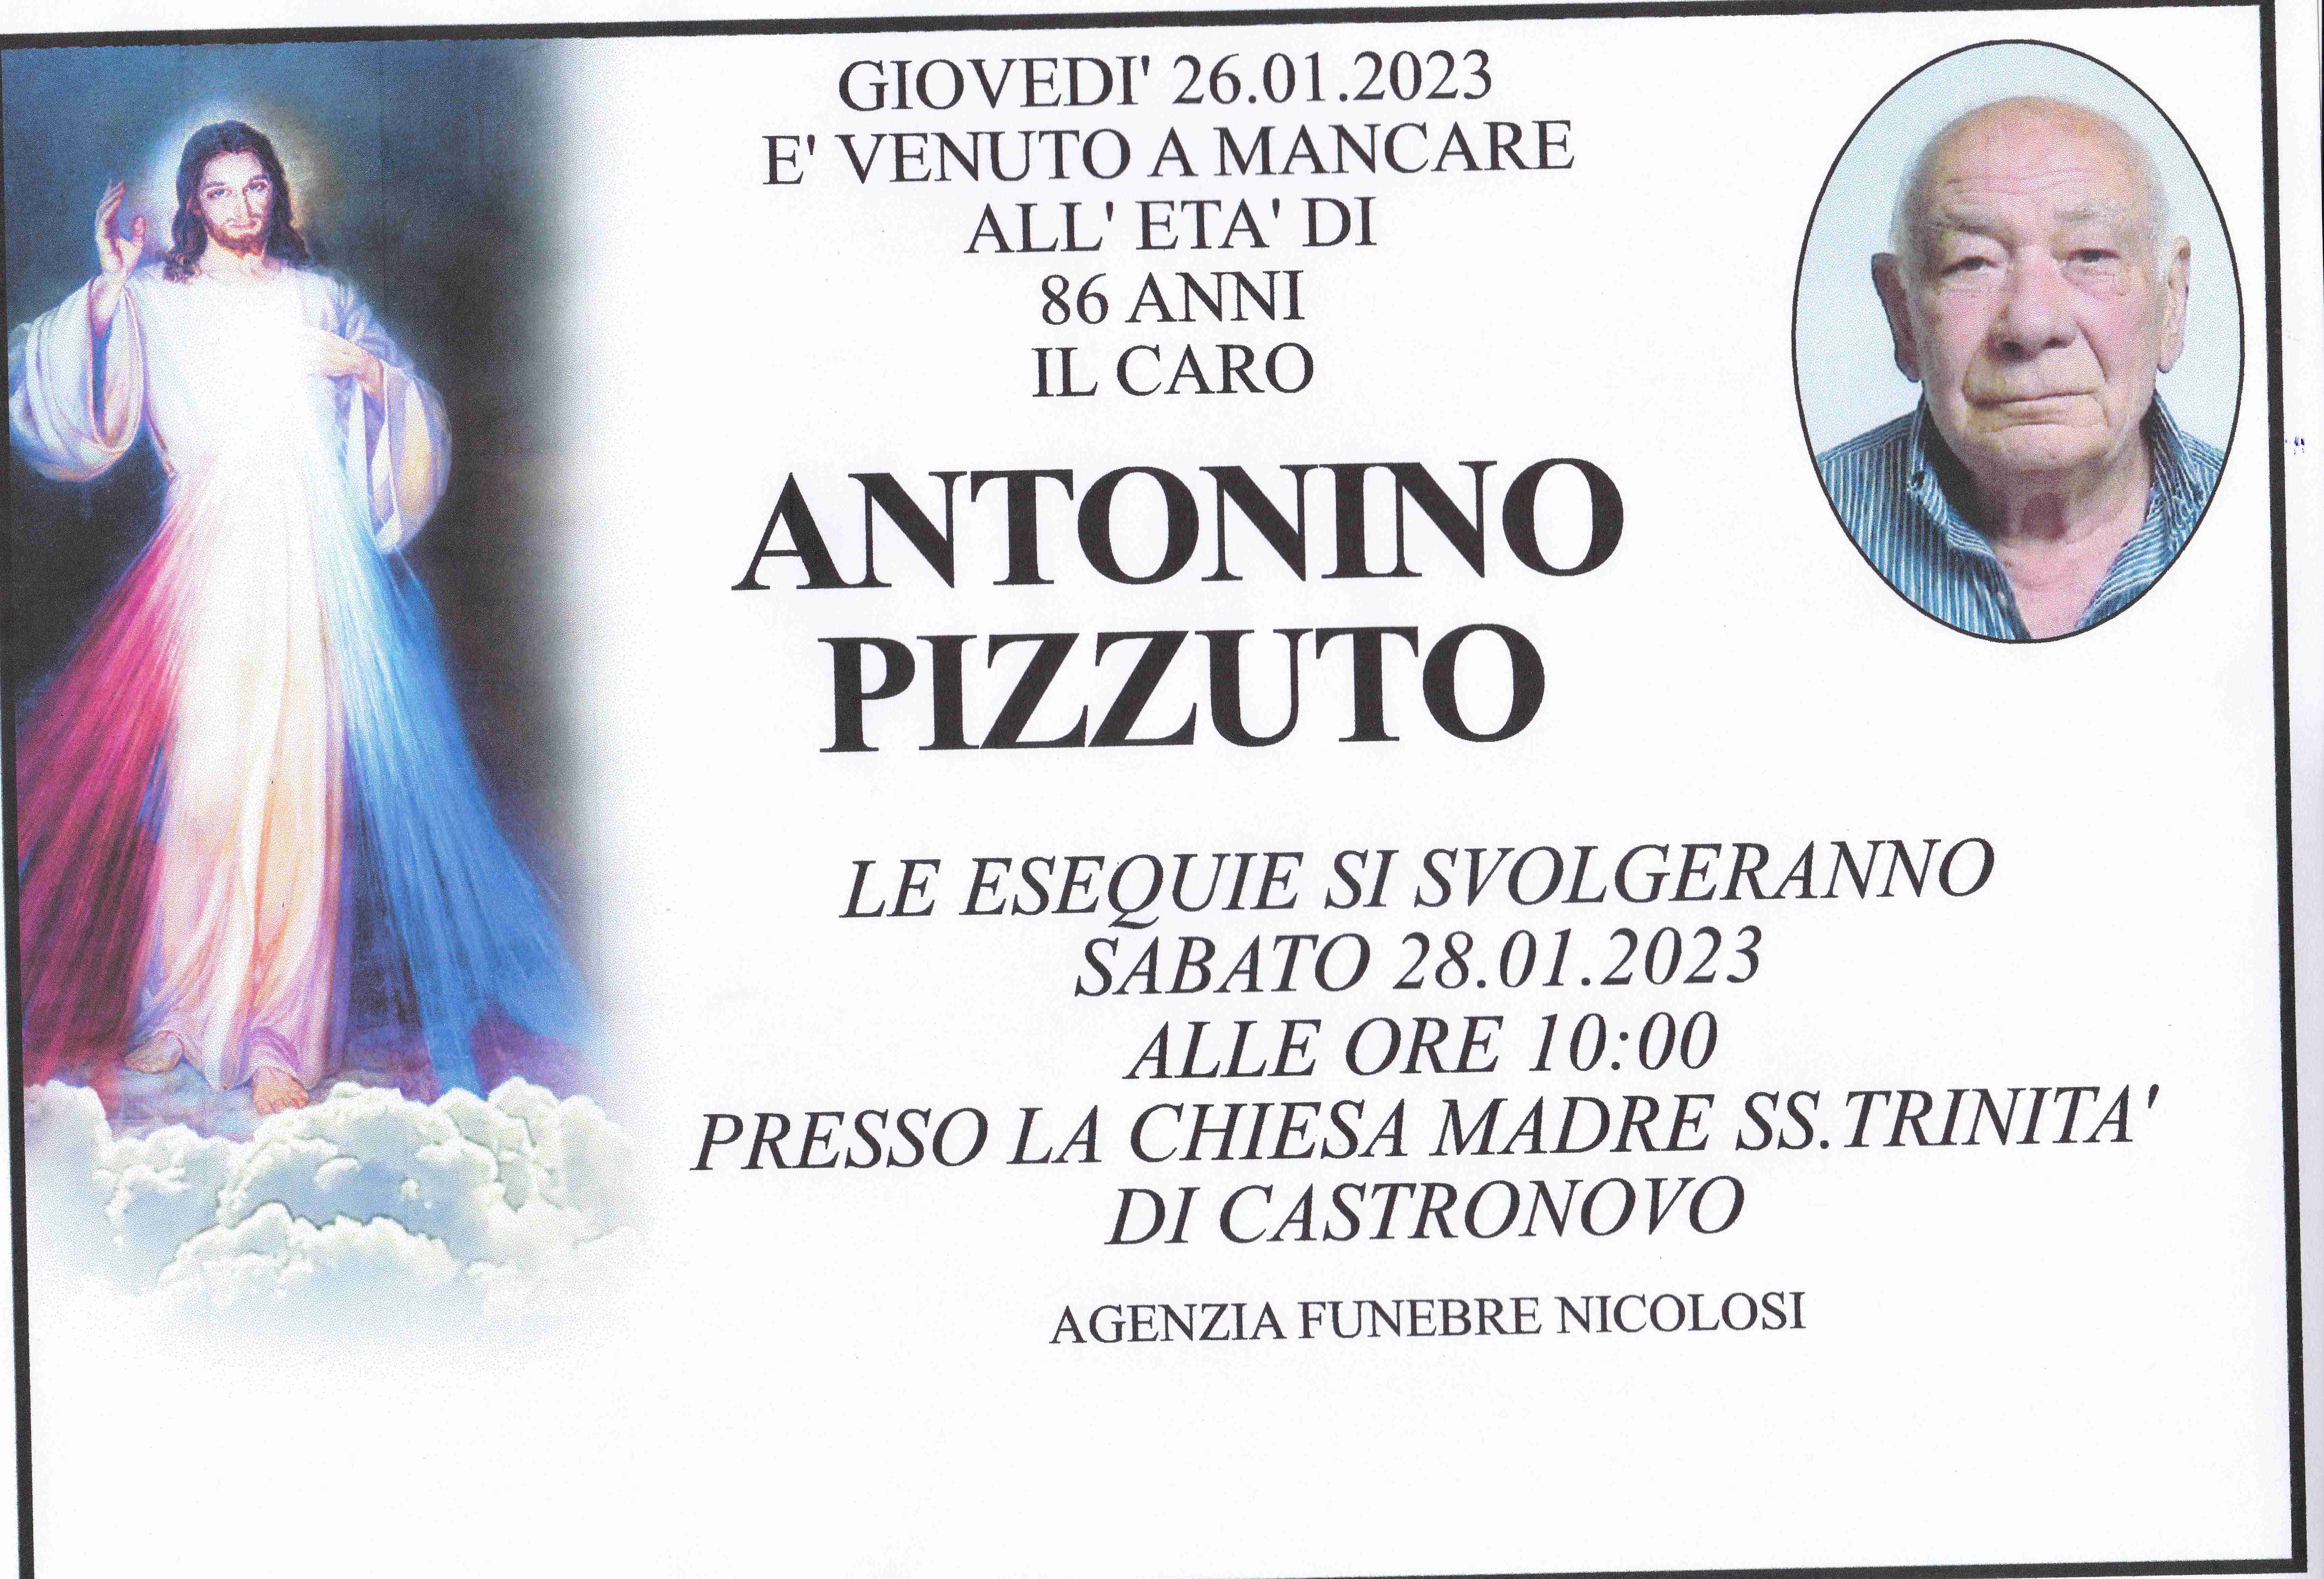 Antonino Pizzuto